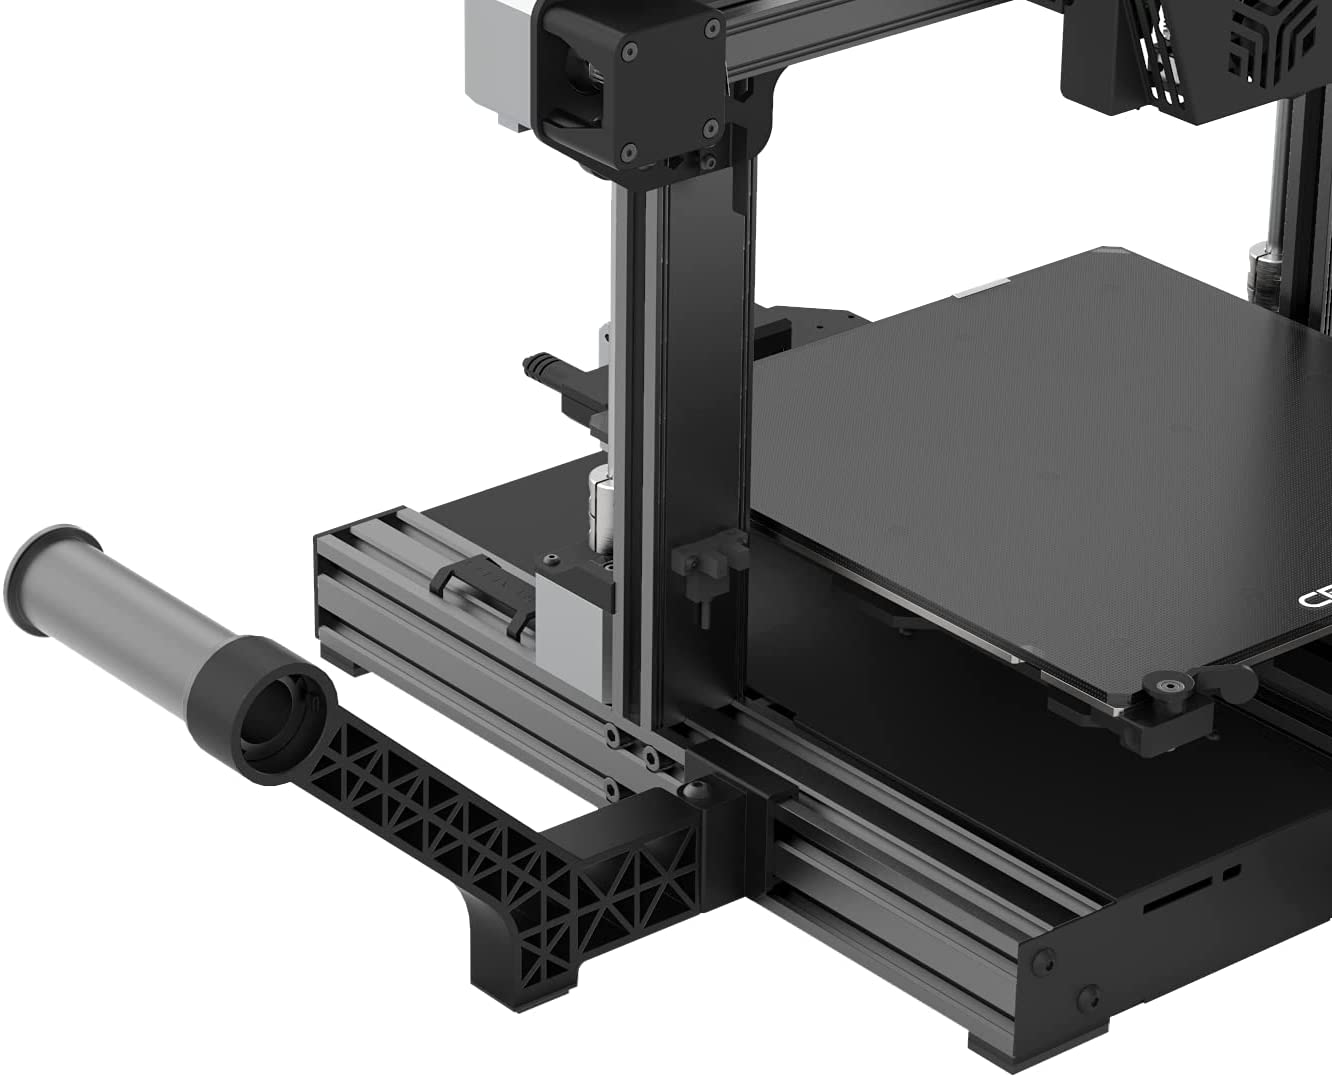 Impressora 3D Creality CR-6 SE